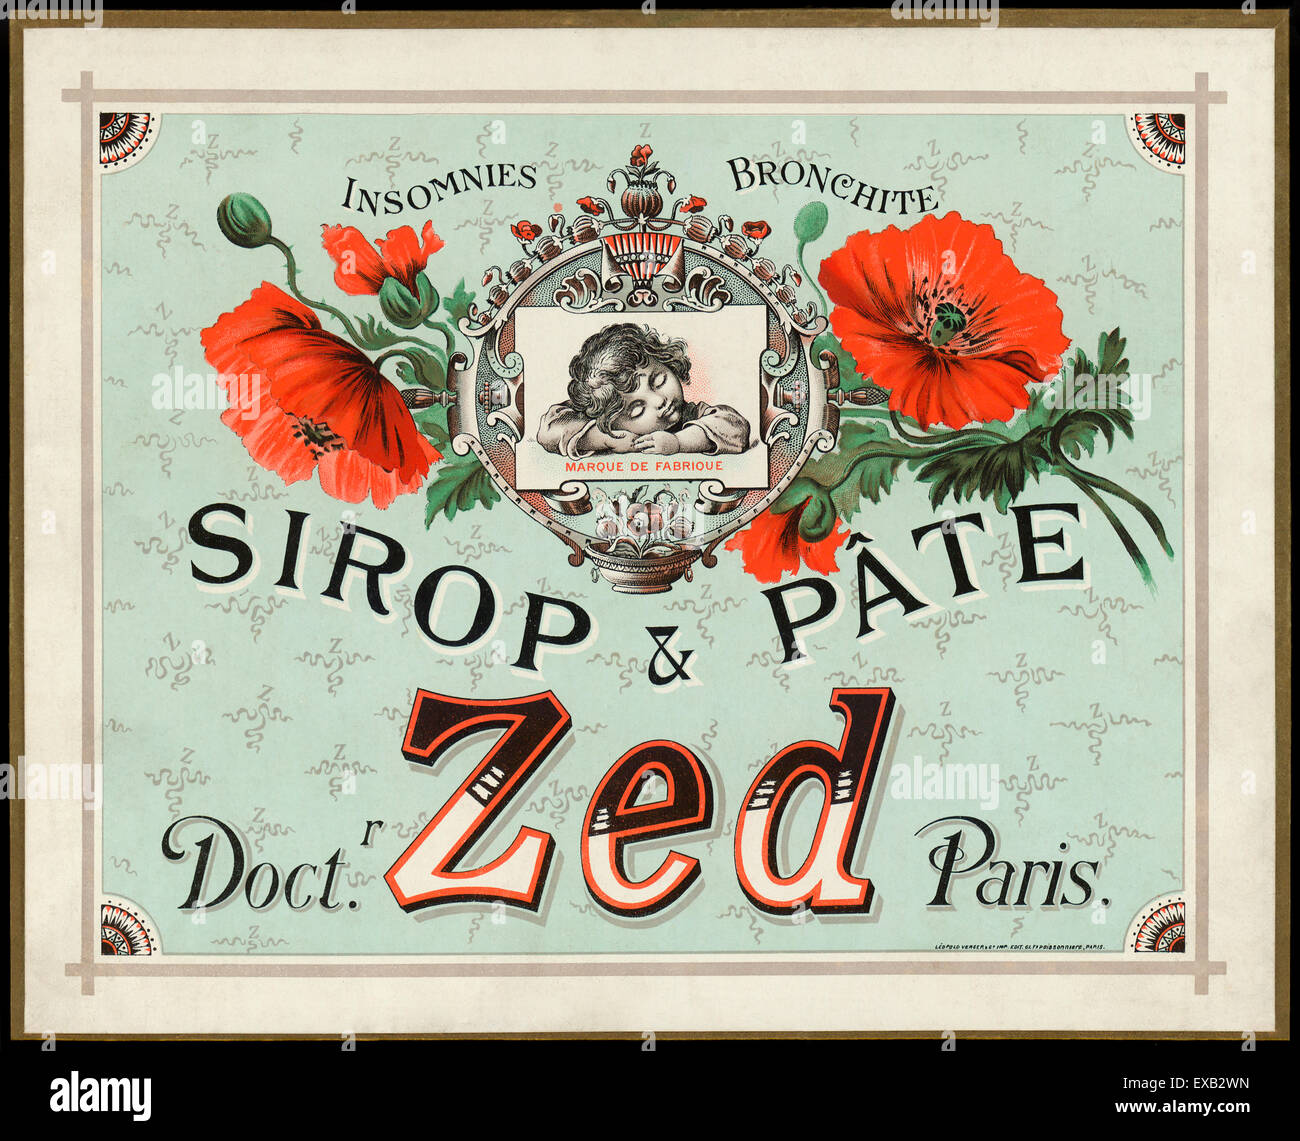 Werbung für Sirop & Pate Zed von Léopold Verger & Companie, Paris um 1890 hergestellt. Sirop-Zed und Sirop Pate war eine populäre französische Hustensaft und Medizin für Kinder und Erwachsene vermarktet um Halsschmerzen und Schlaflosigkeit helfen. Der Wirkstoff in beiden wurde Codein, ein Schlaf-induzierende und Analgetikum Droge von Opium abgeleitet. Diese Periode Anzeige verfügt über ein Kind ruht friedlich eingerahmt von Mohn Hülsen und farbenfrohen Illustrationen von Papaver Somniferum (Schlafmohn). Siehe Beschreibung für mehr Informationen. Stockfoto